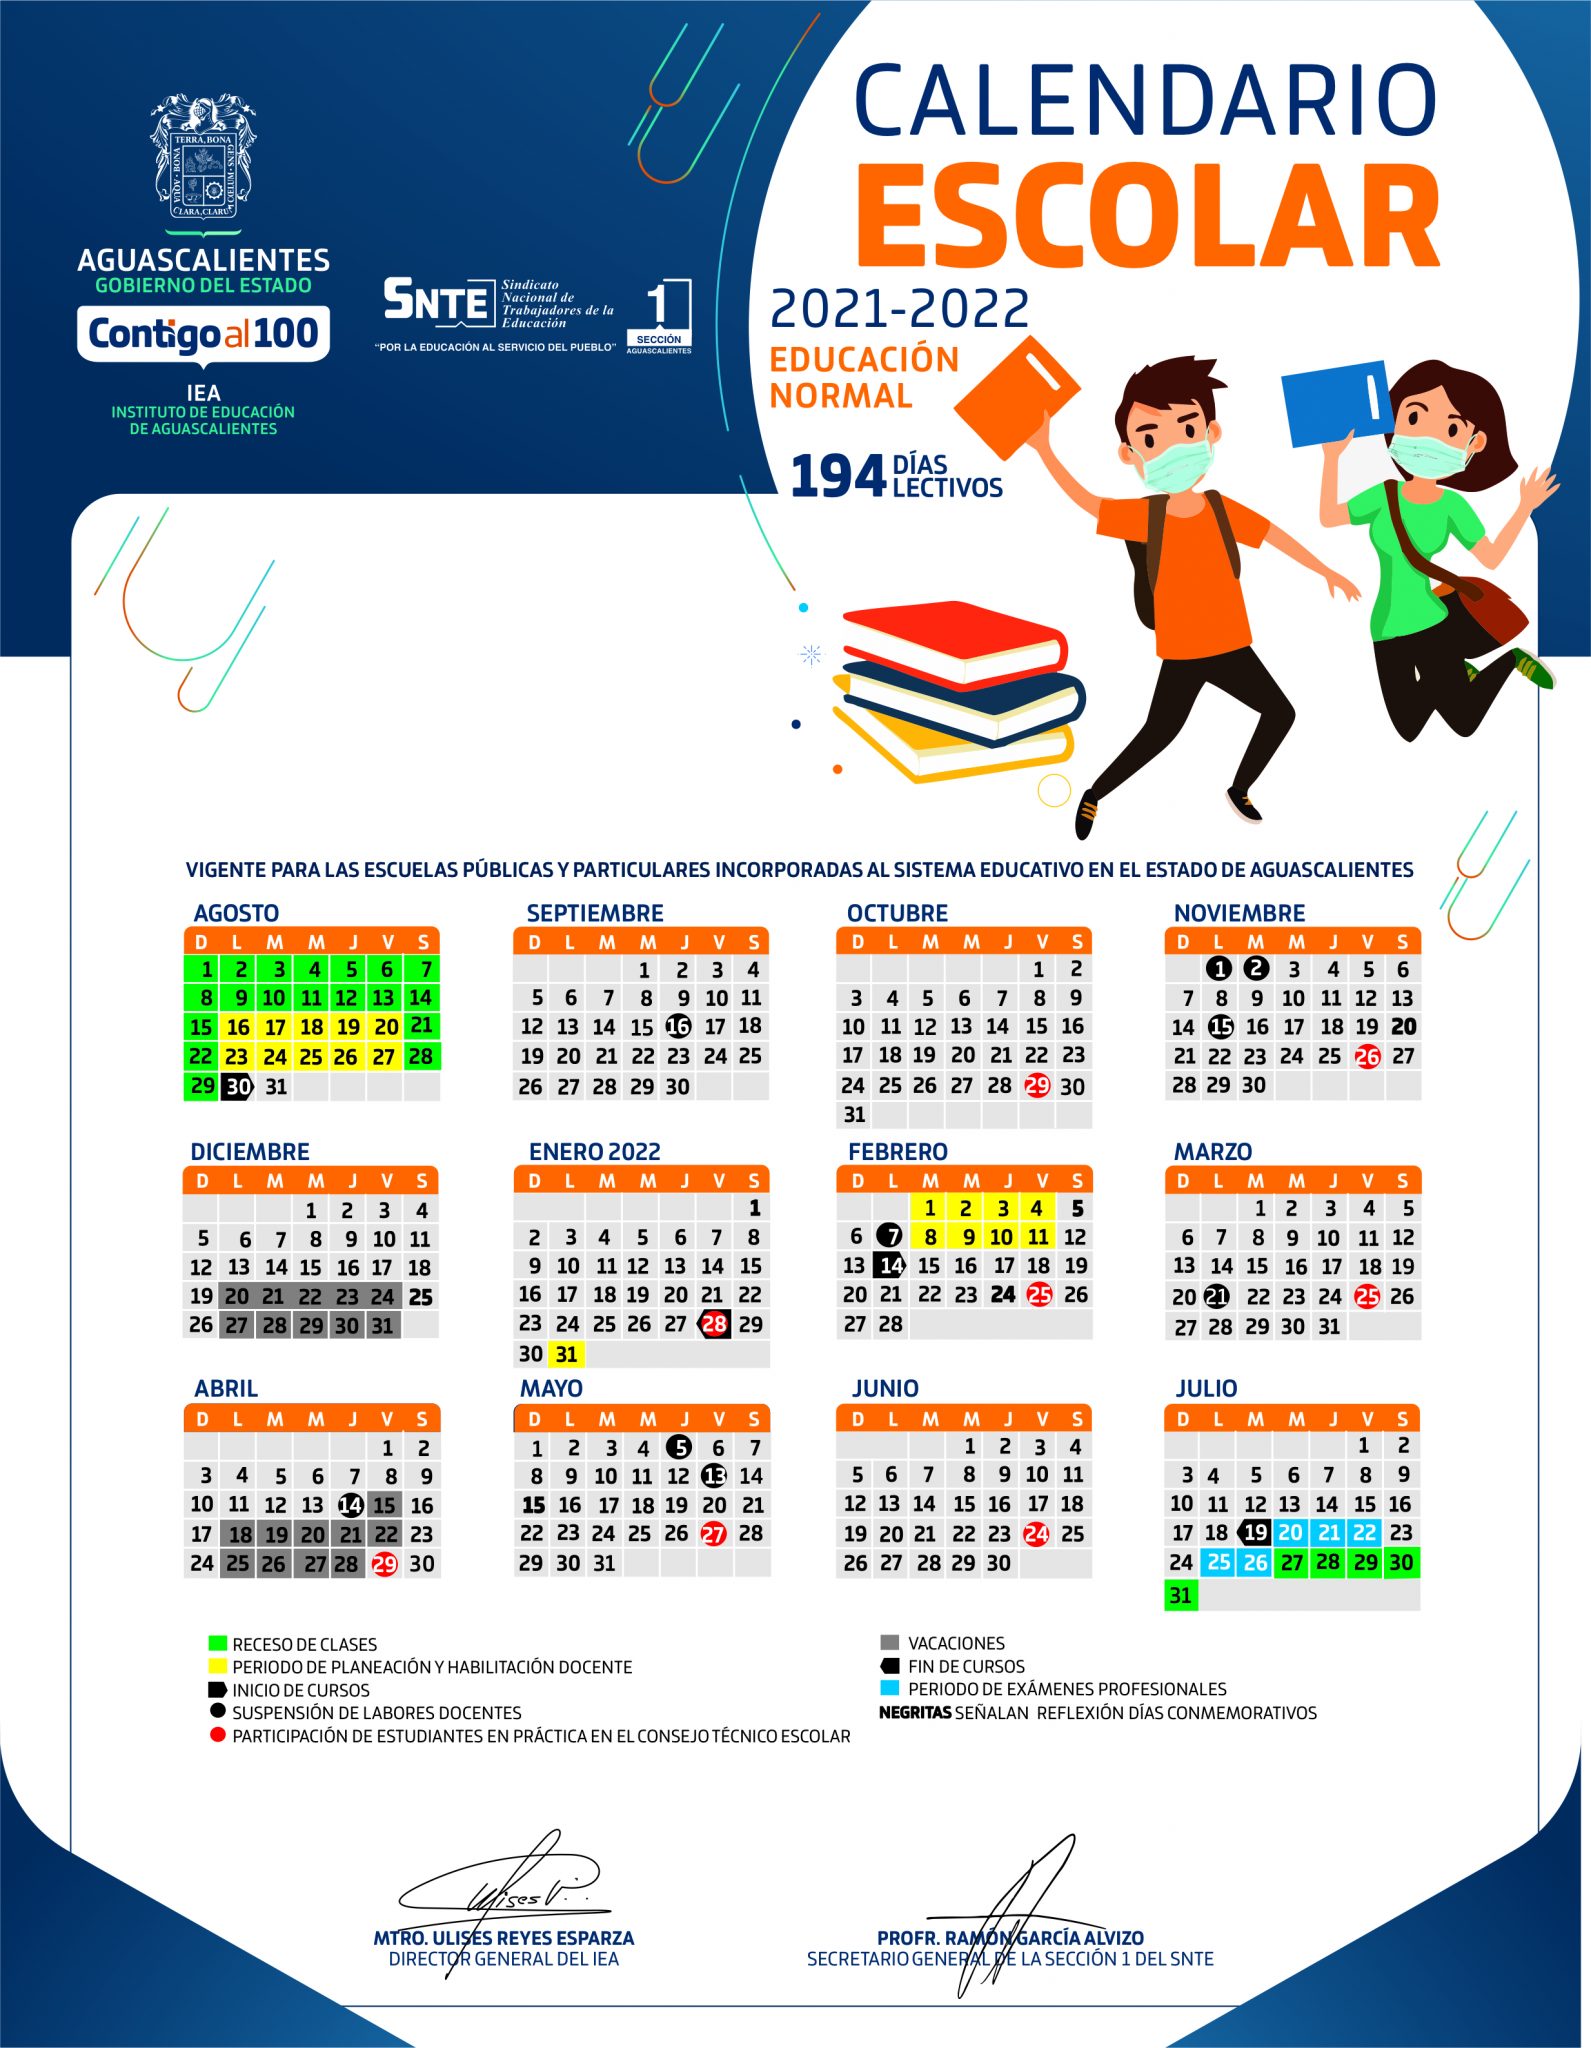 Calendario Escolar 2021 2022 Normales 194 D 205 As Riset